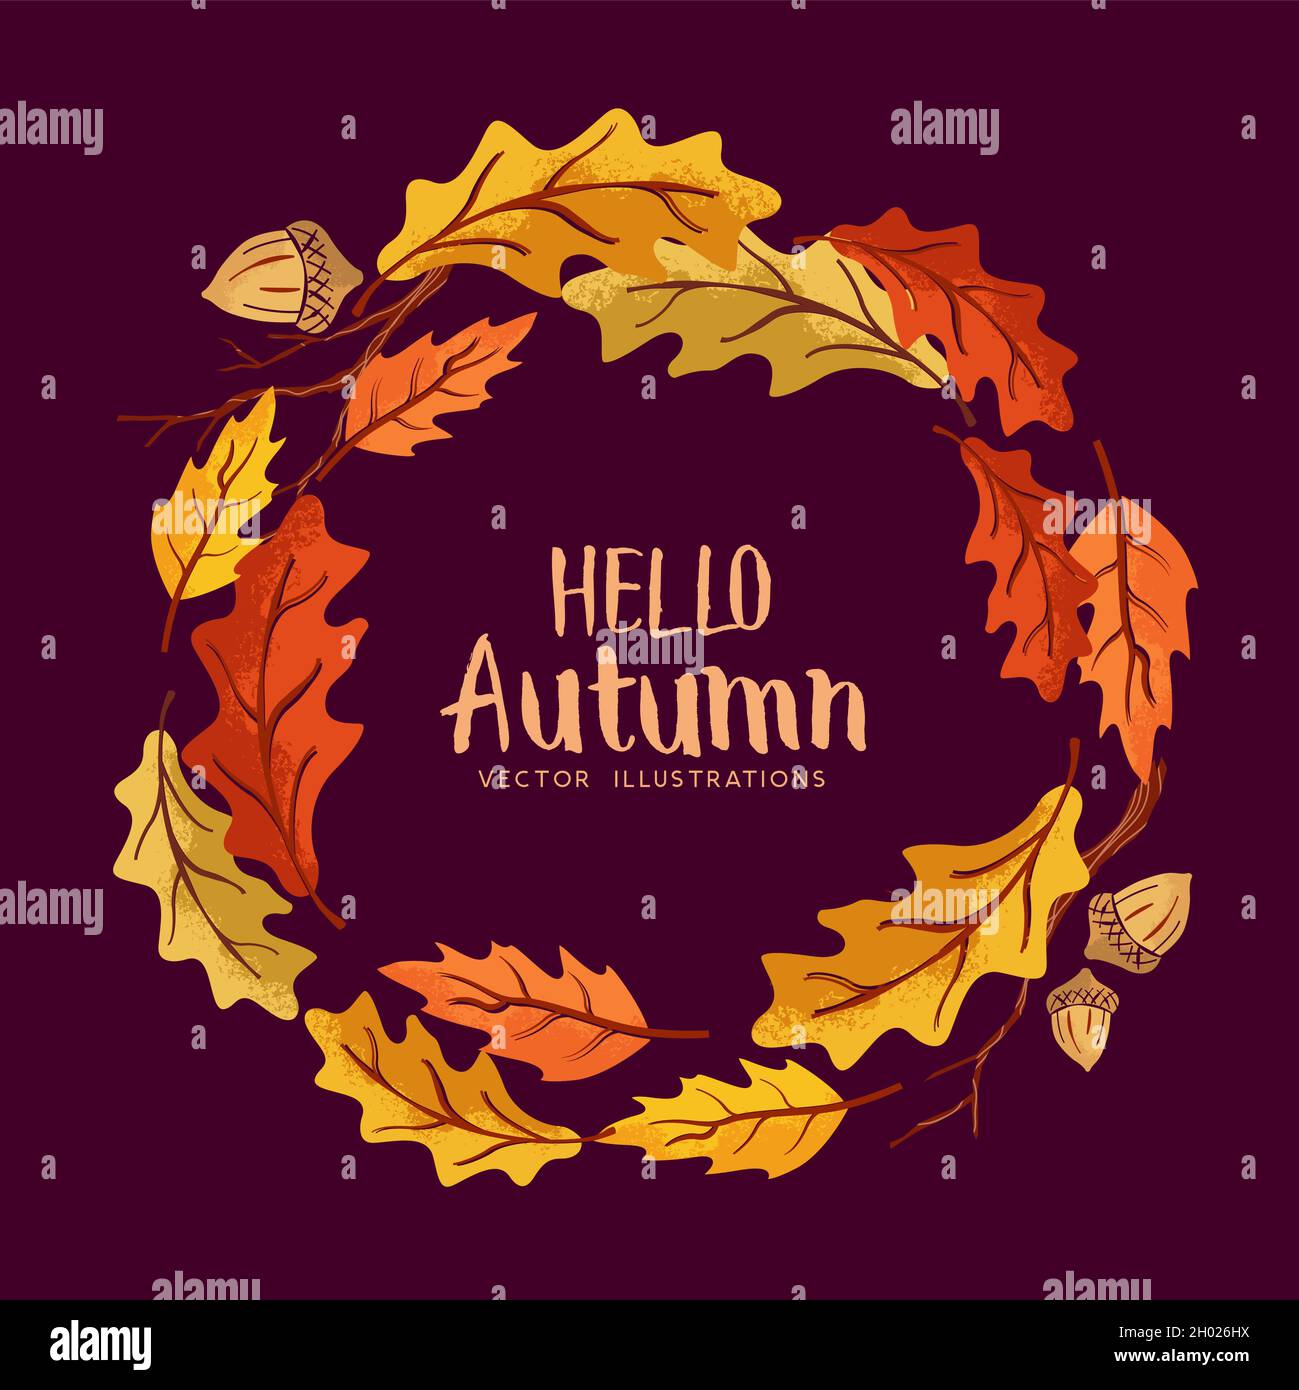 Fröhlicher Herbstkranz aus goldfarbenen und rot gefärbten Blättern. Vektorgrafik. Stock Vektor